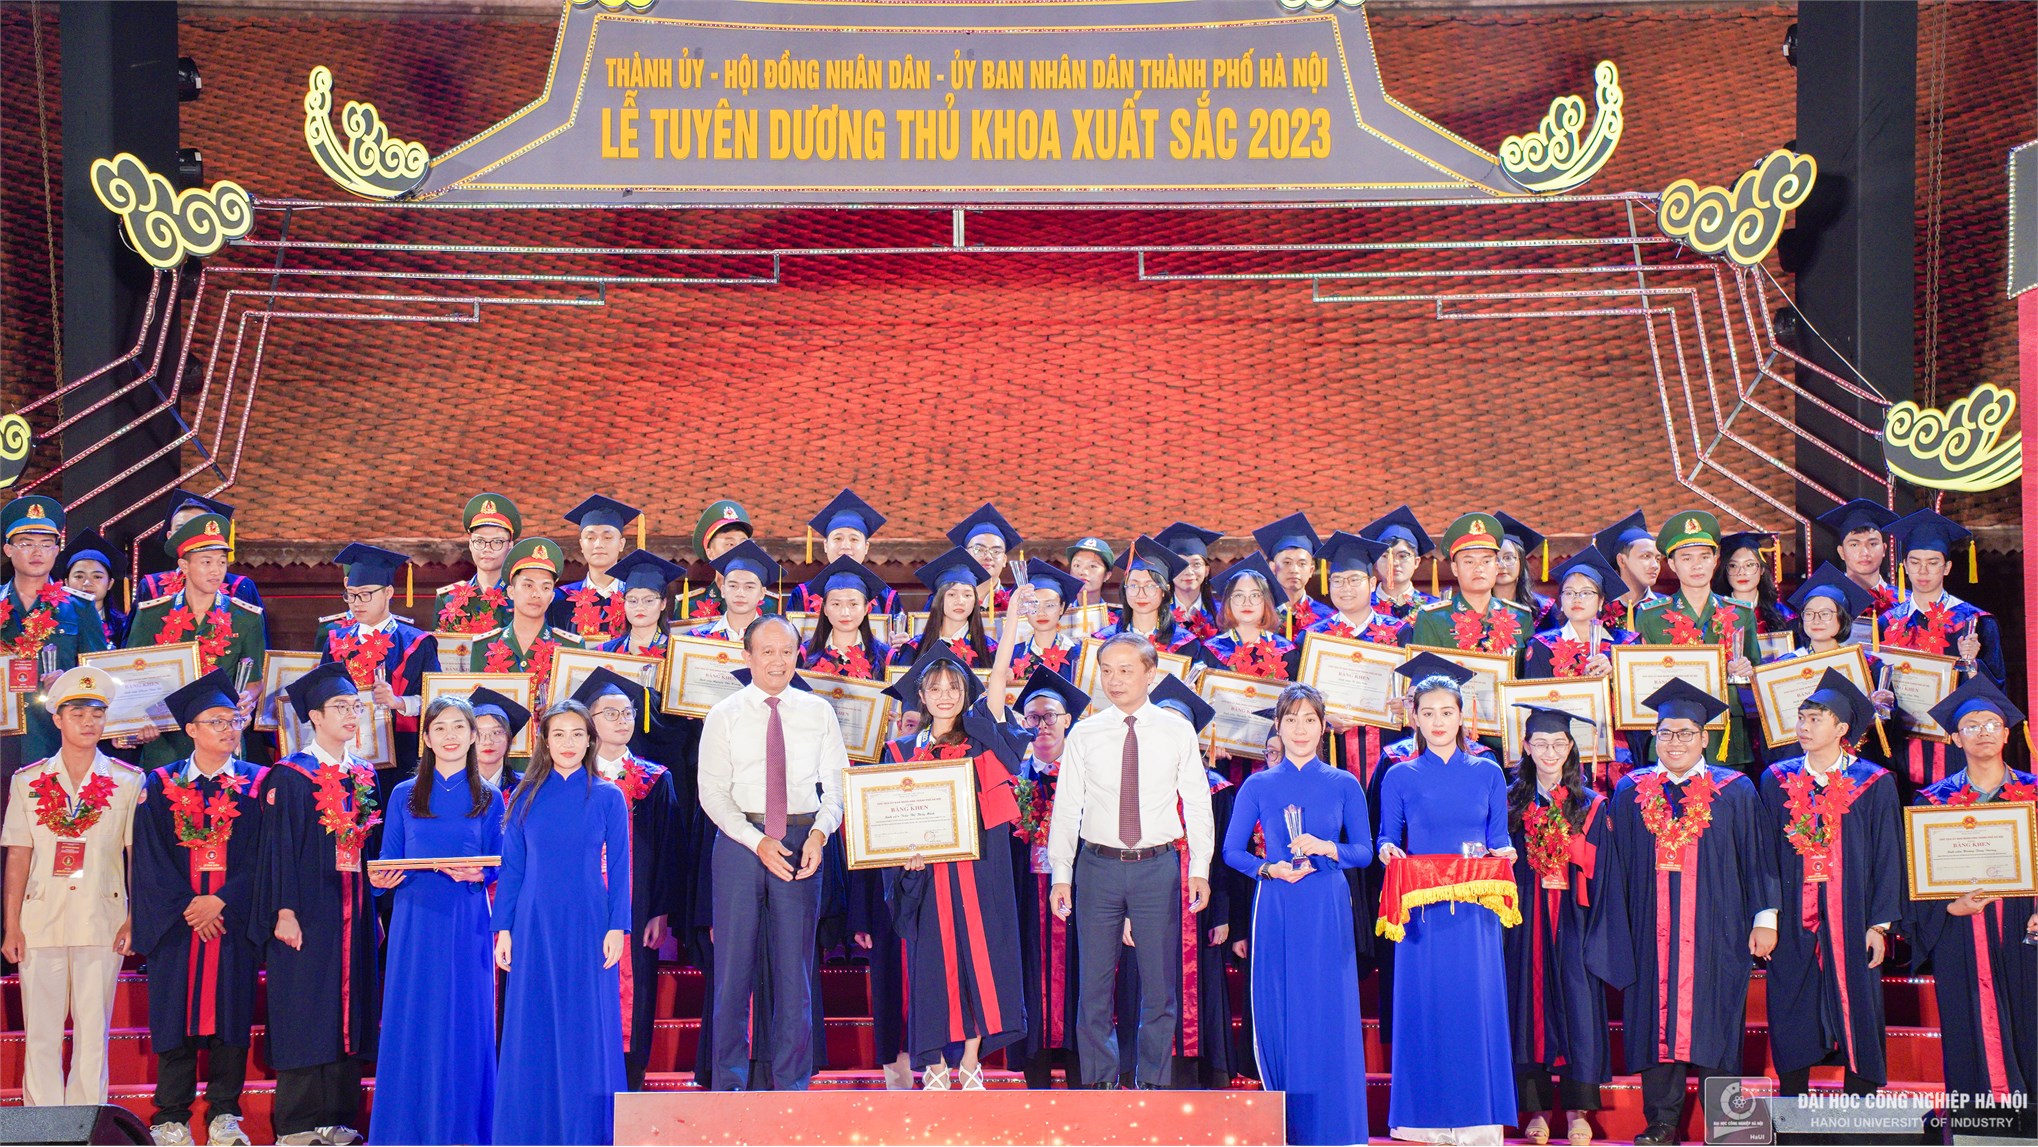 Vinh danh 2 nữ thủ khoa tốt nghiệp xuất sắc Đại học Công nghiệp Hà Nội năm 2023 